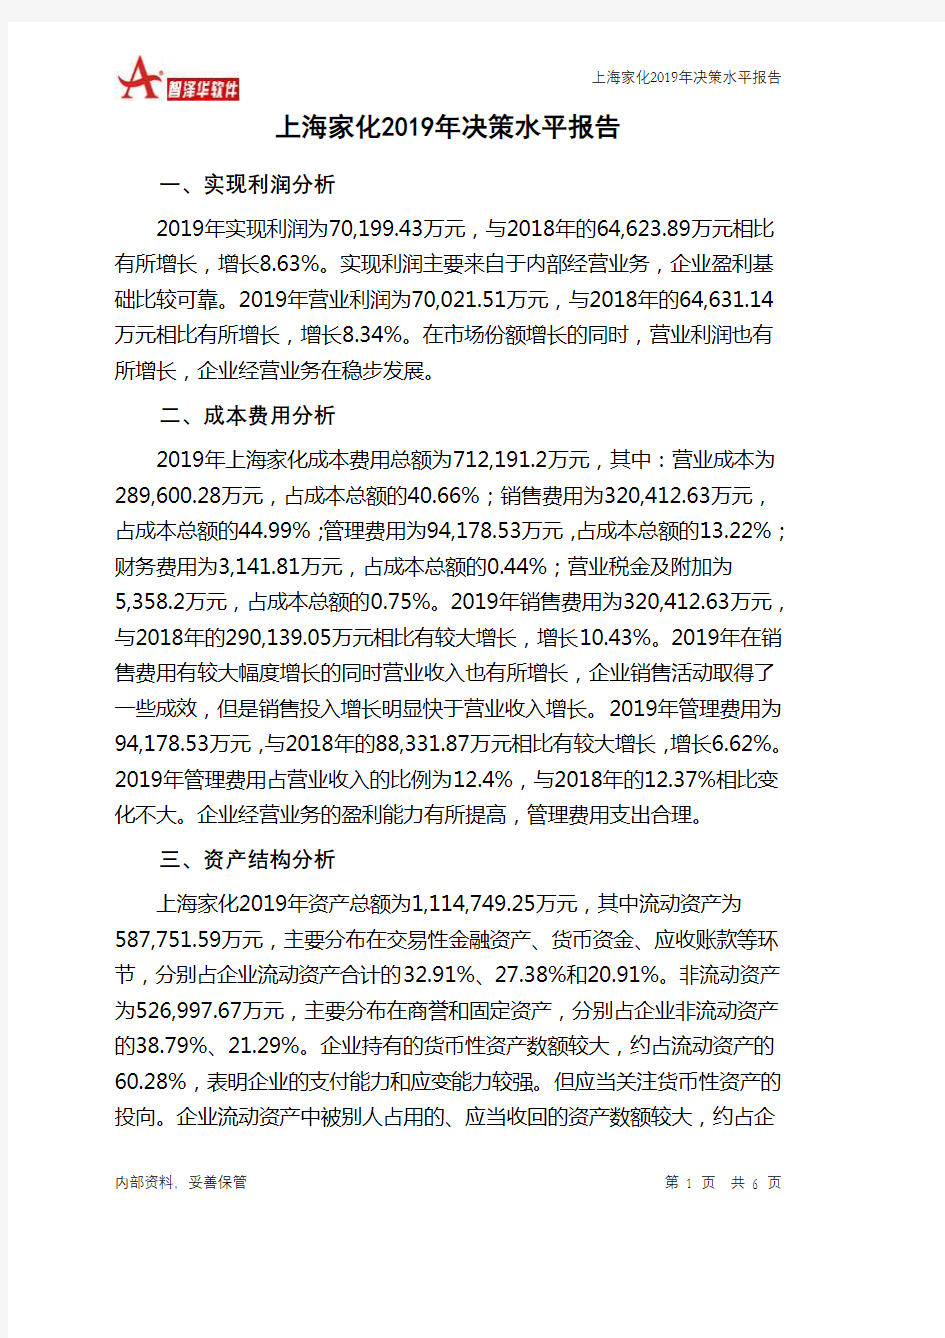 上海家化2019年决策水平分析报告